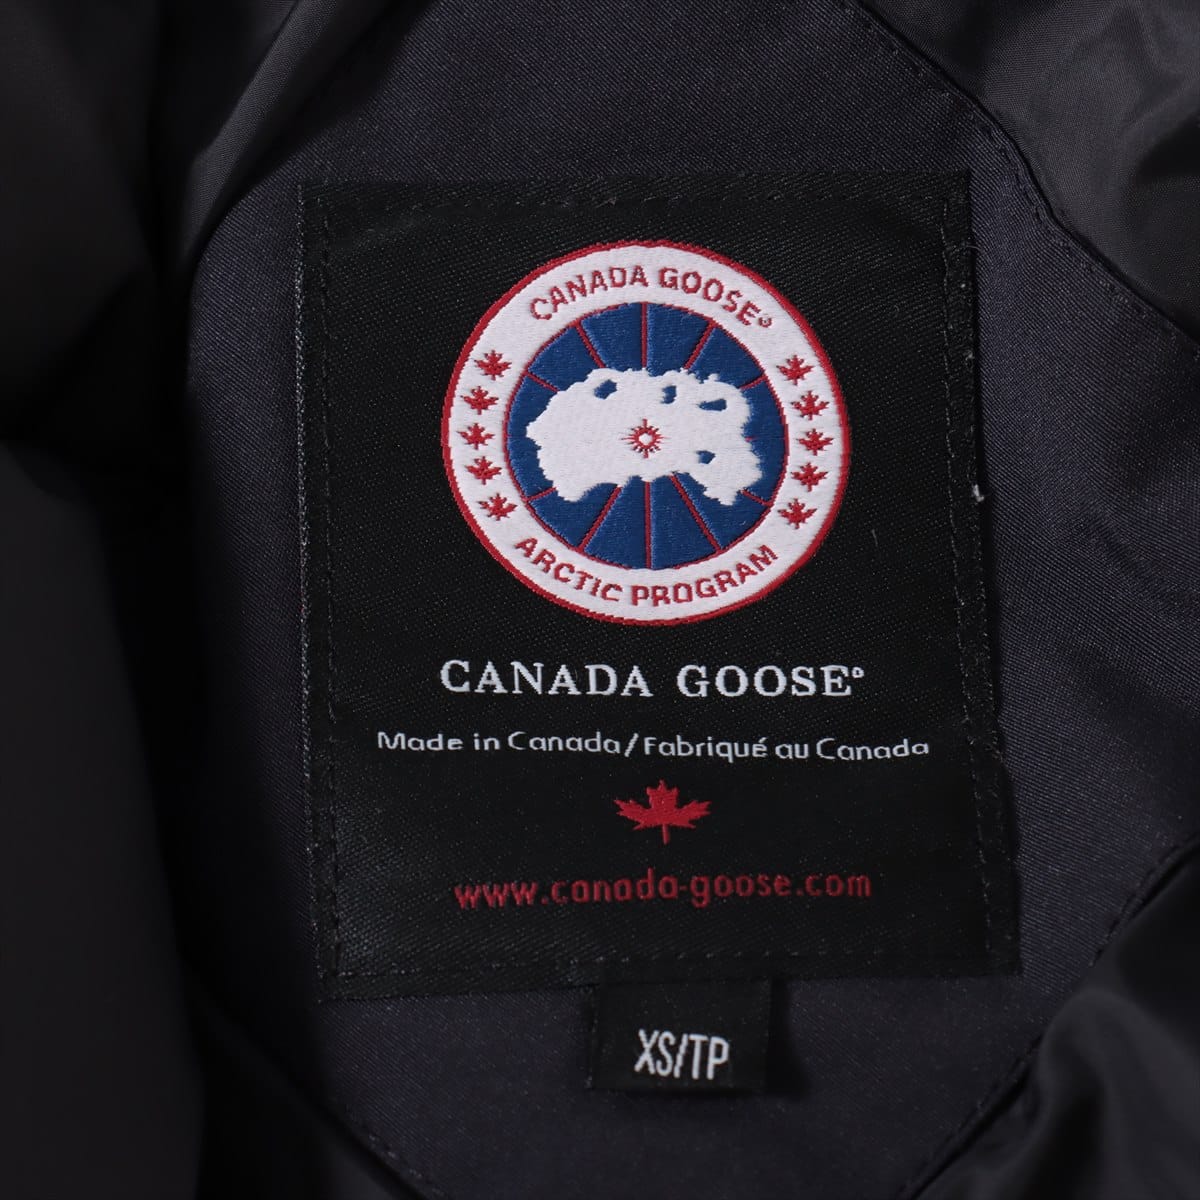 カナダグース JASPER コットン×ポリエステル ダウンジャケット XS/TP メンズ ネイビー  3438JM グリフィン ブラックラベル